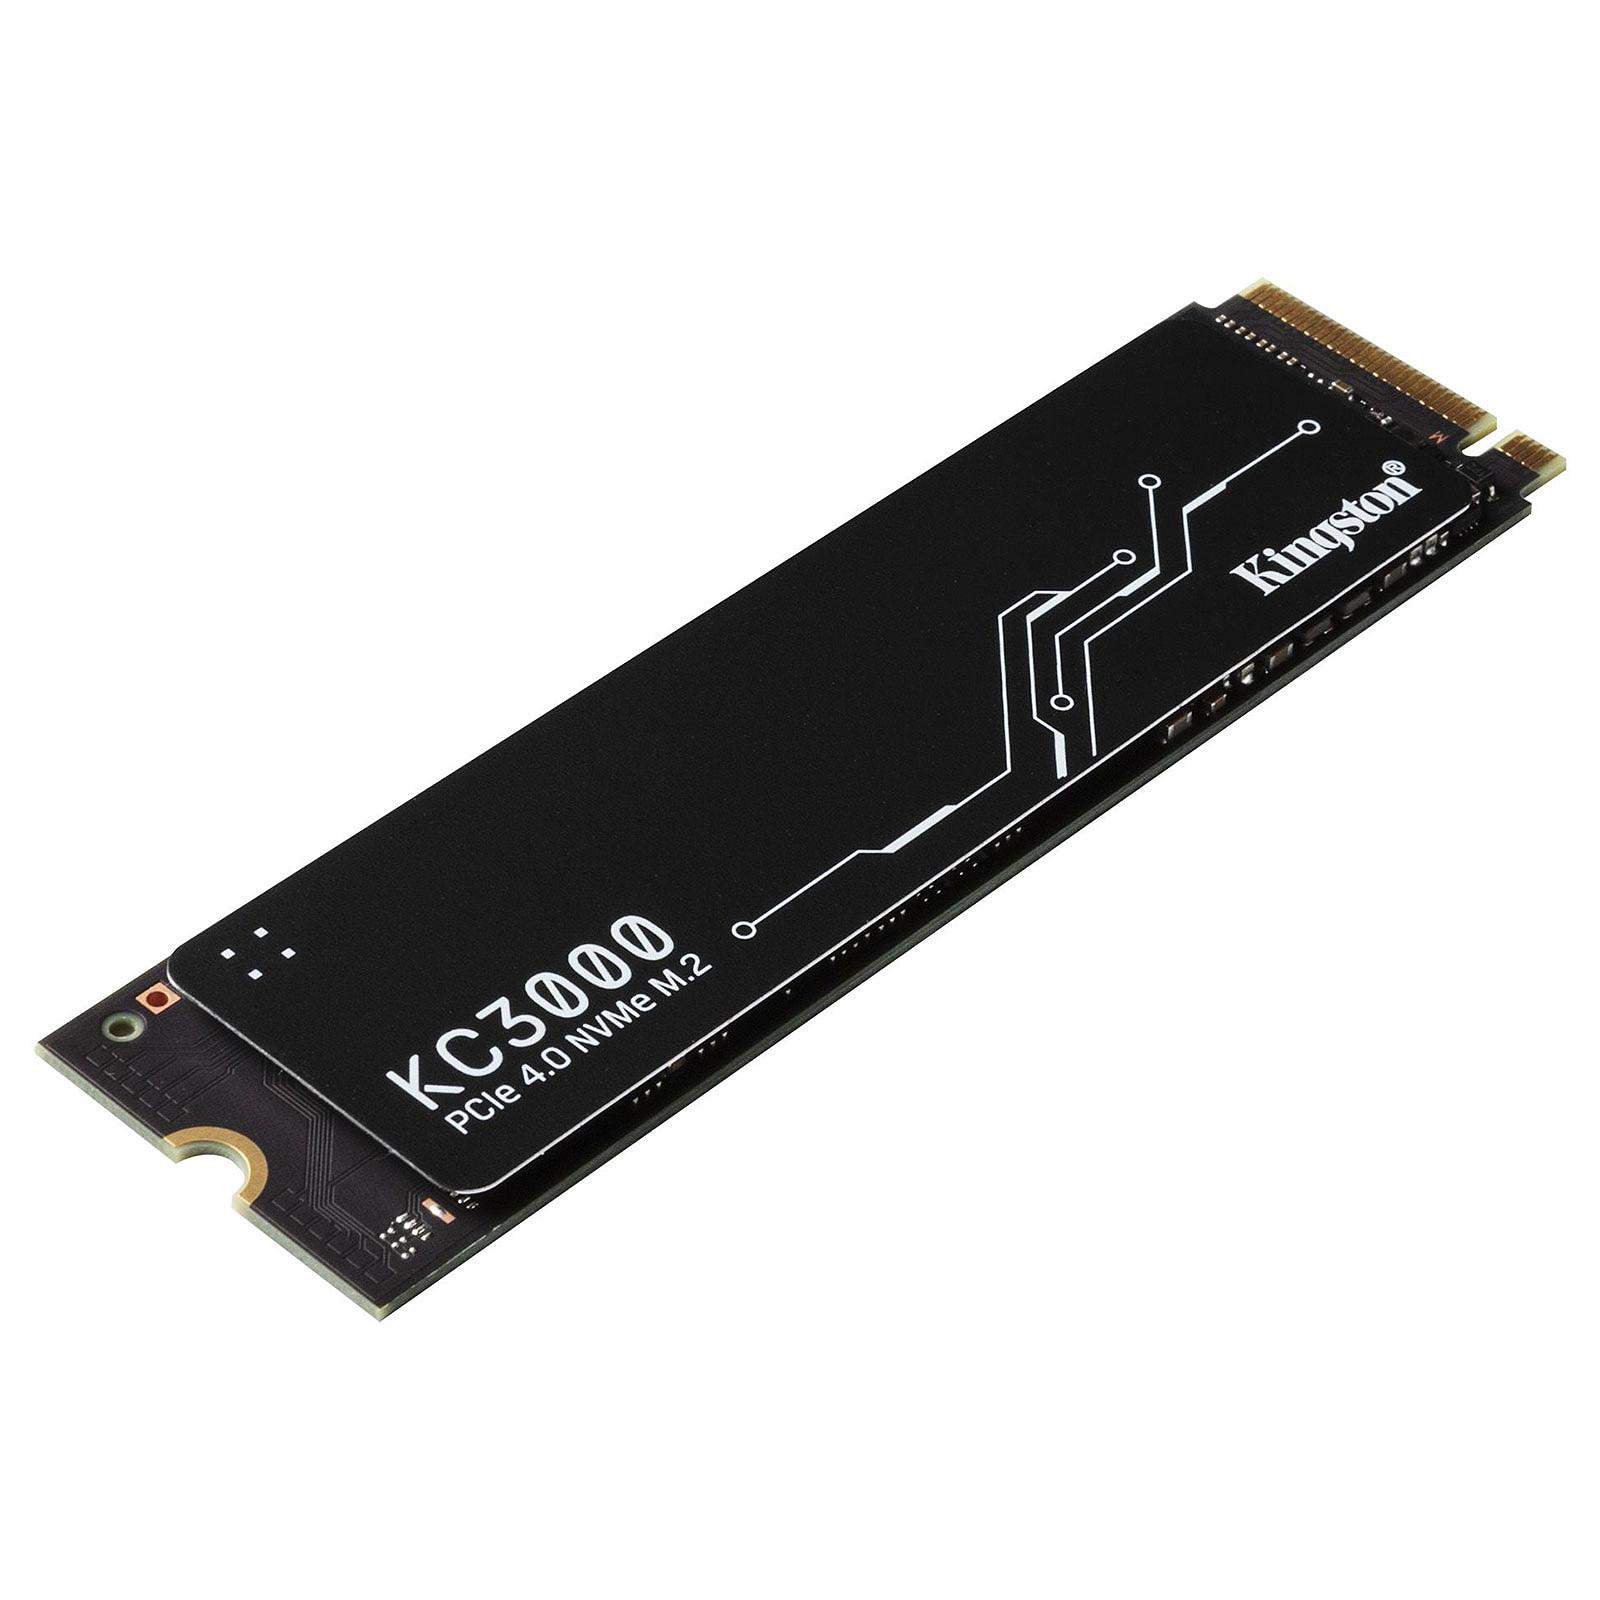 KINGSTON KC3000 2048G PCIE 4.0 NVME M.2 SSD